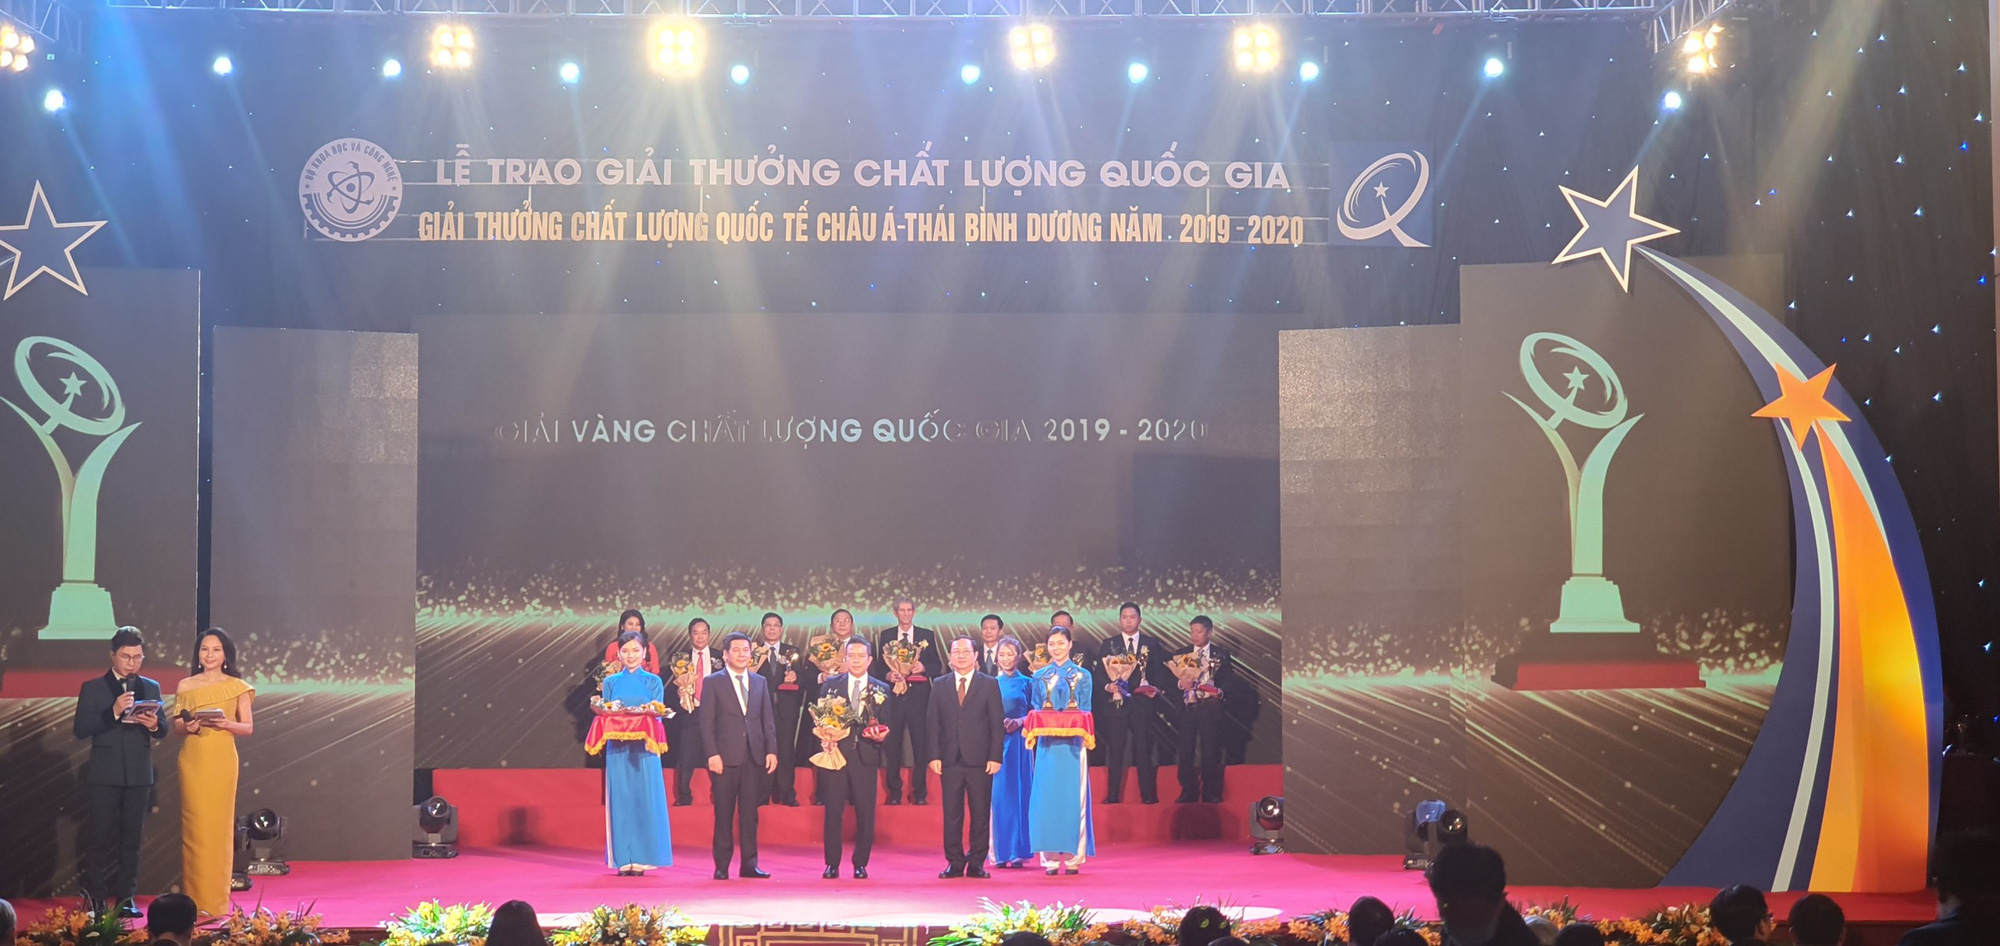 Phân bón Cà Mau nhận giải Vàng chất lượng quốc gia năm 2020 - Ảnh 2.